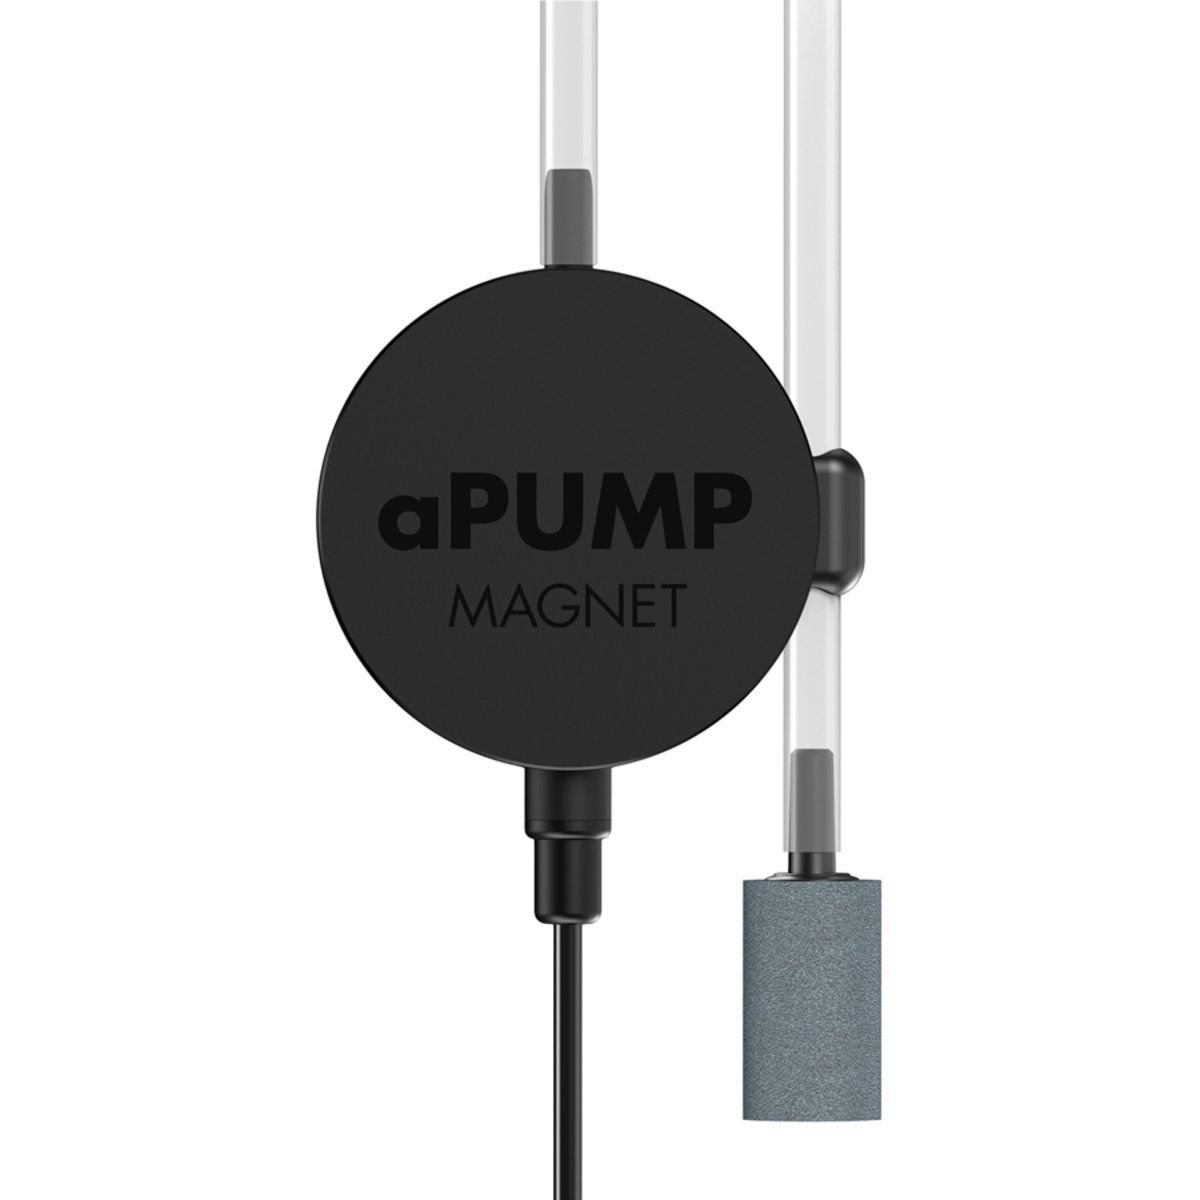 Бесшумный компрессор AquaLighter aPUMP Magnet для аквариумов до 100 л - фото 1